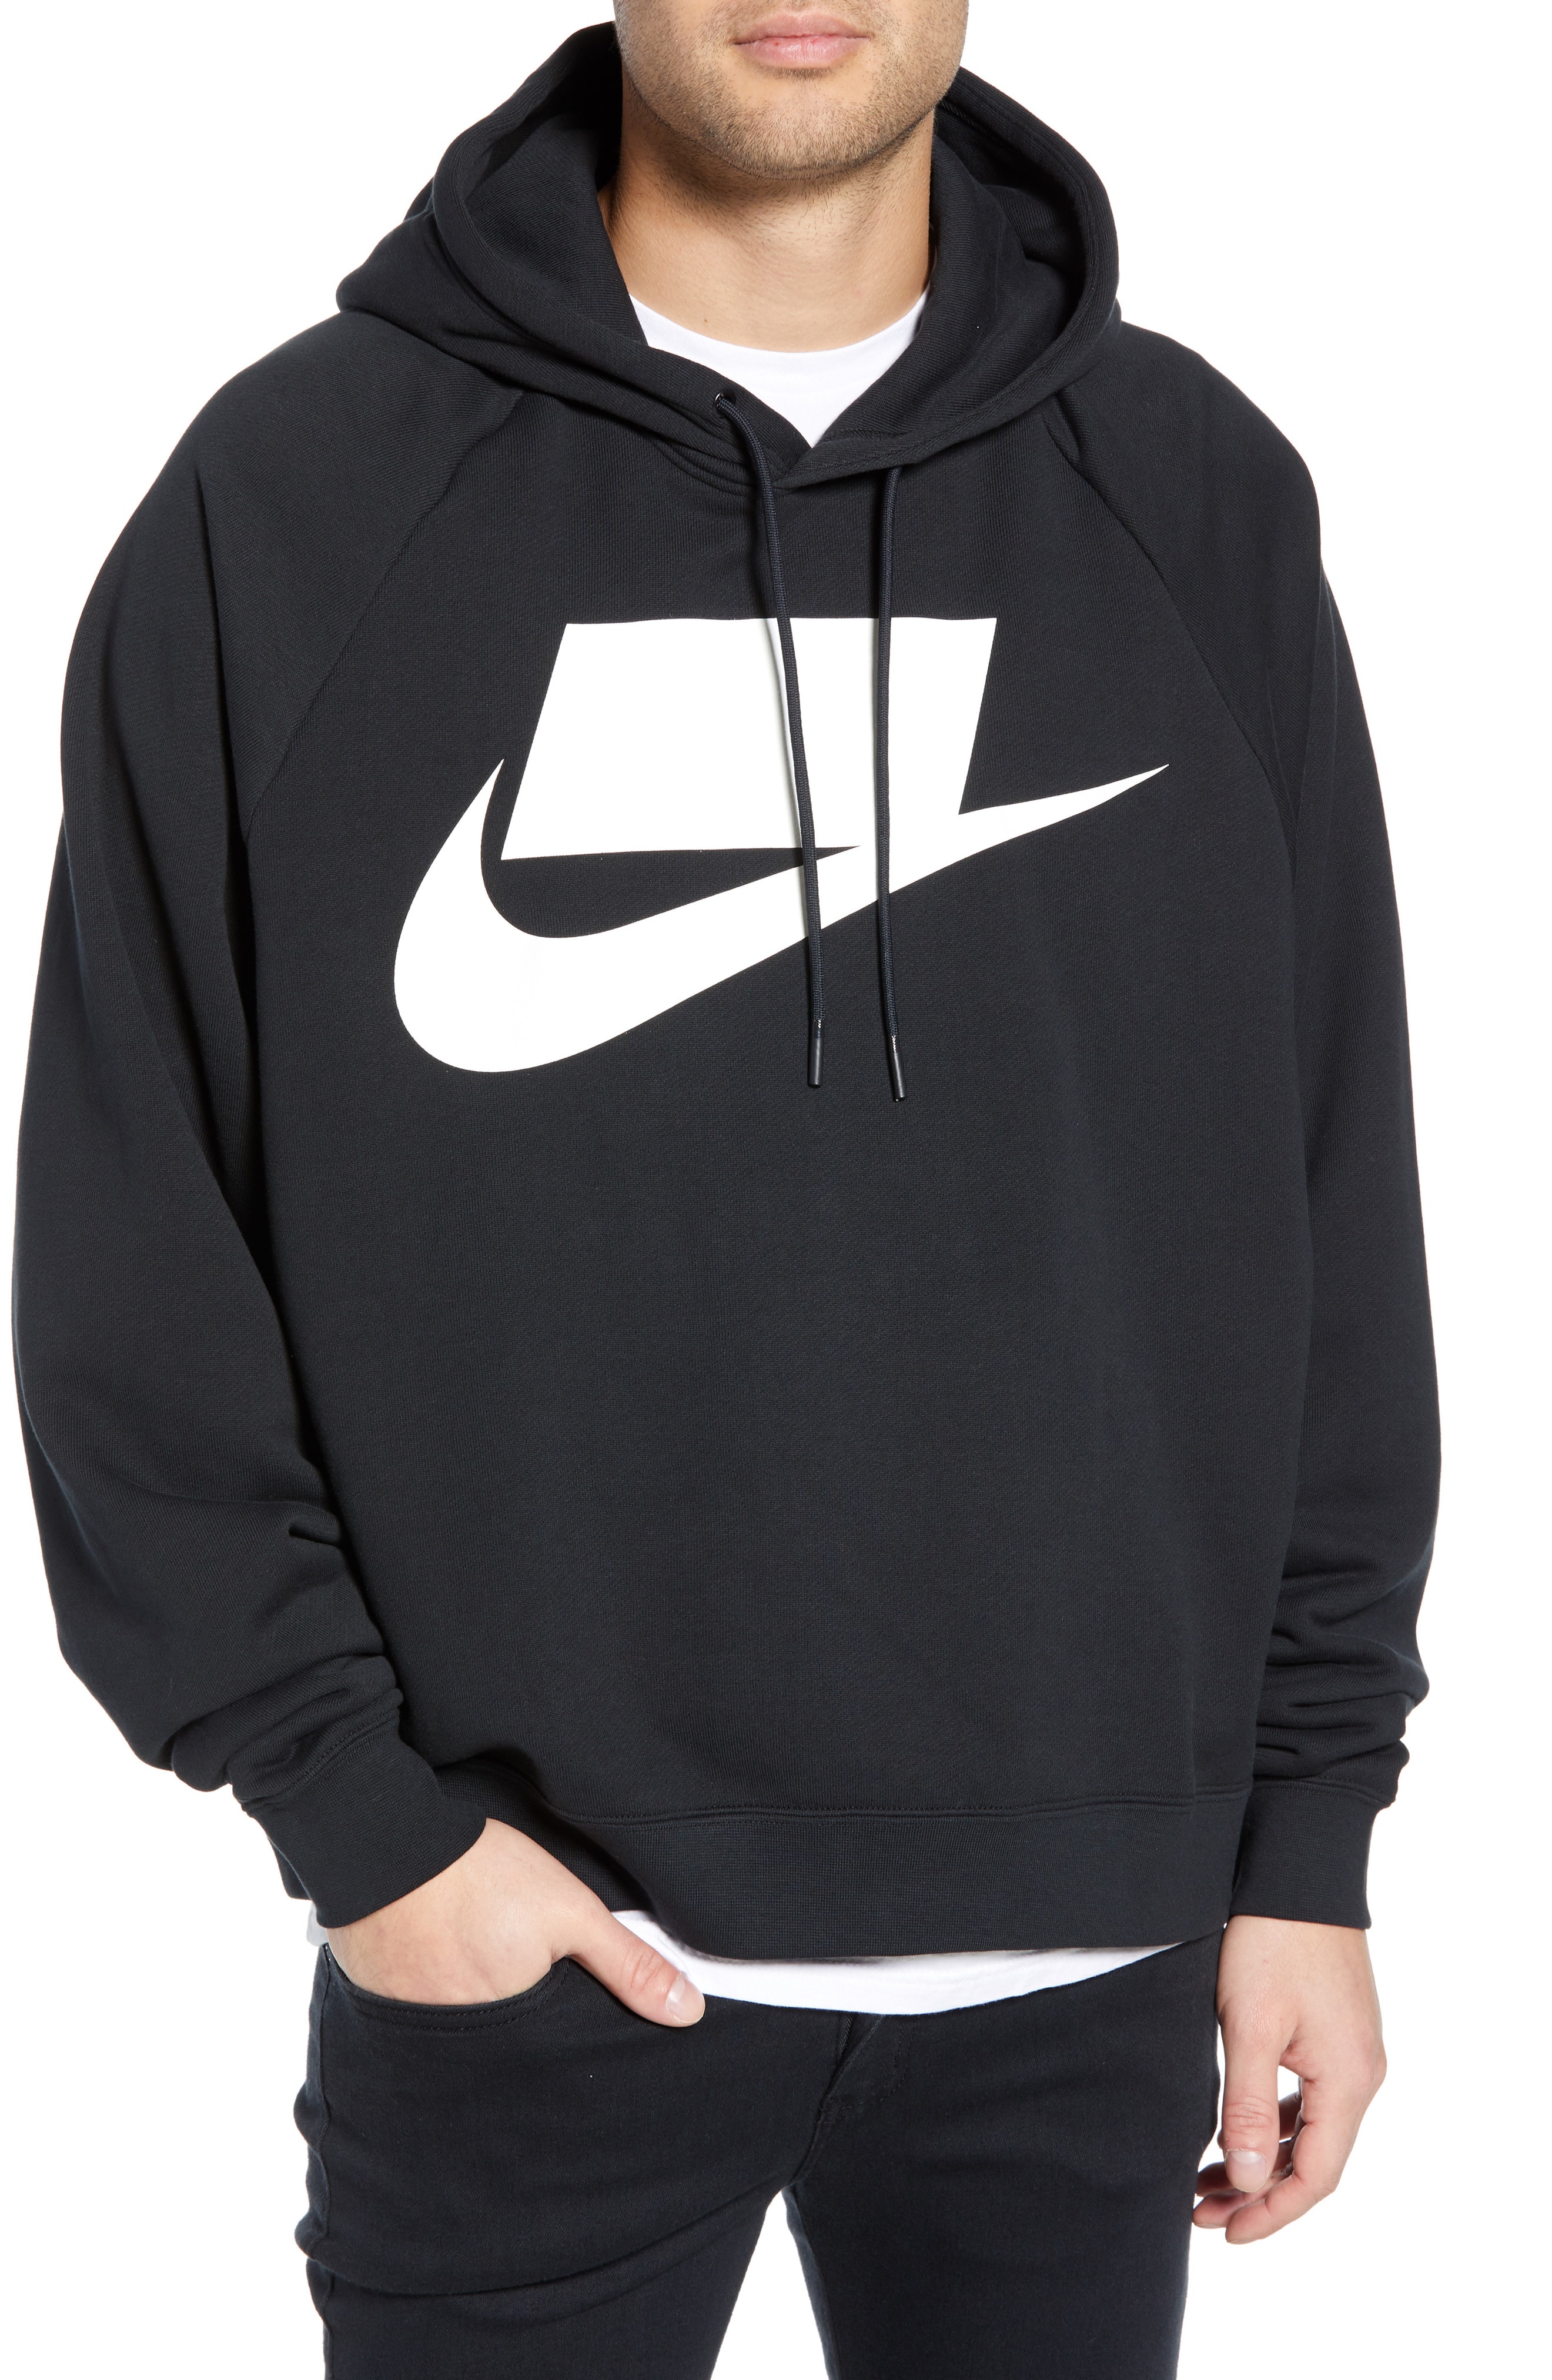 Men's Nike Hoodies & Sweatshirts | Nordstrom